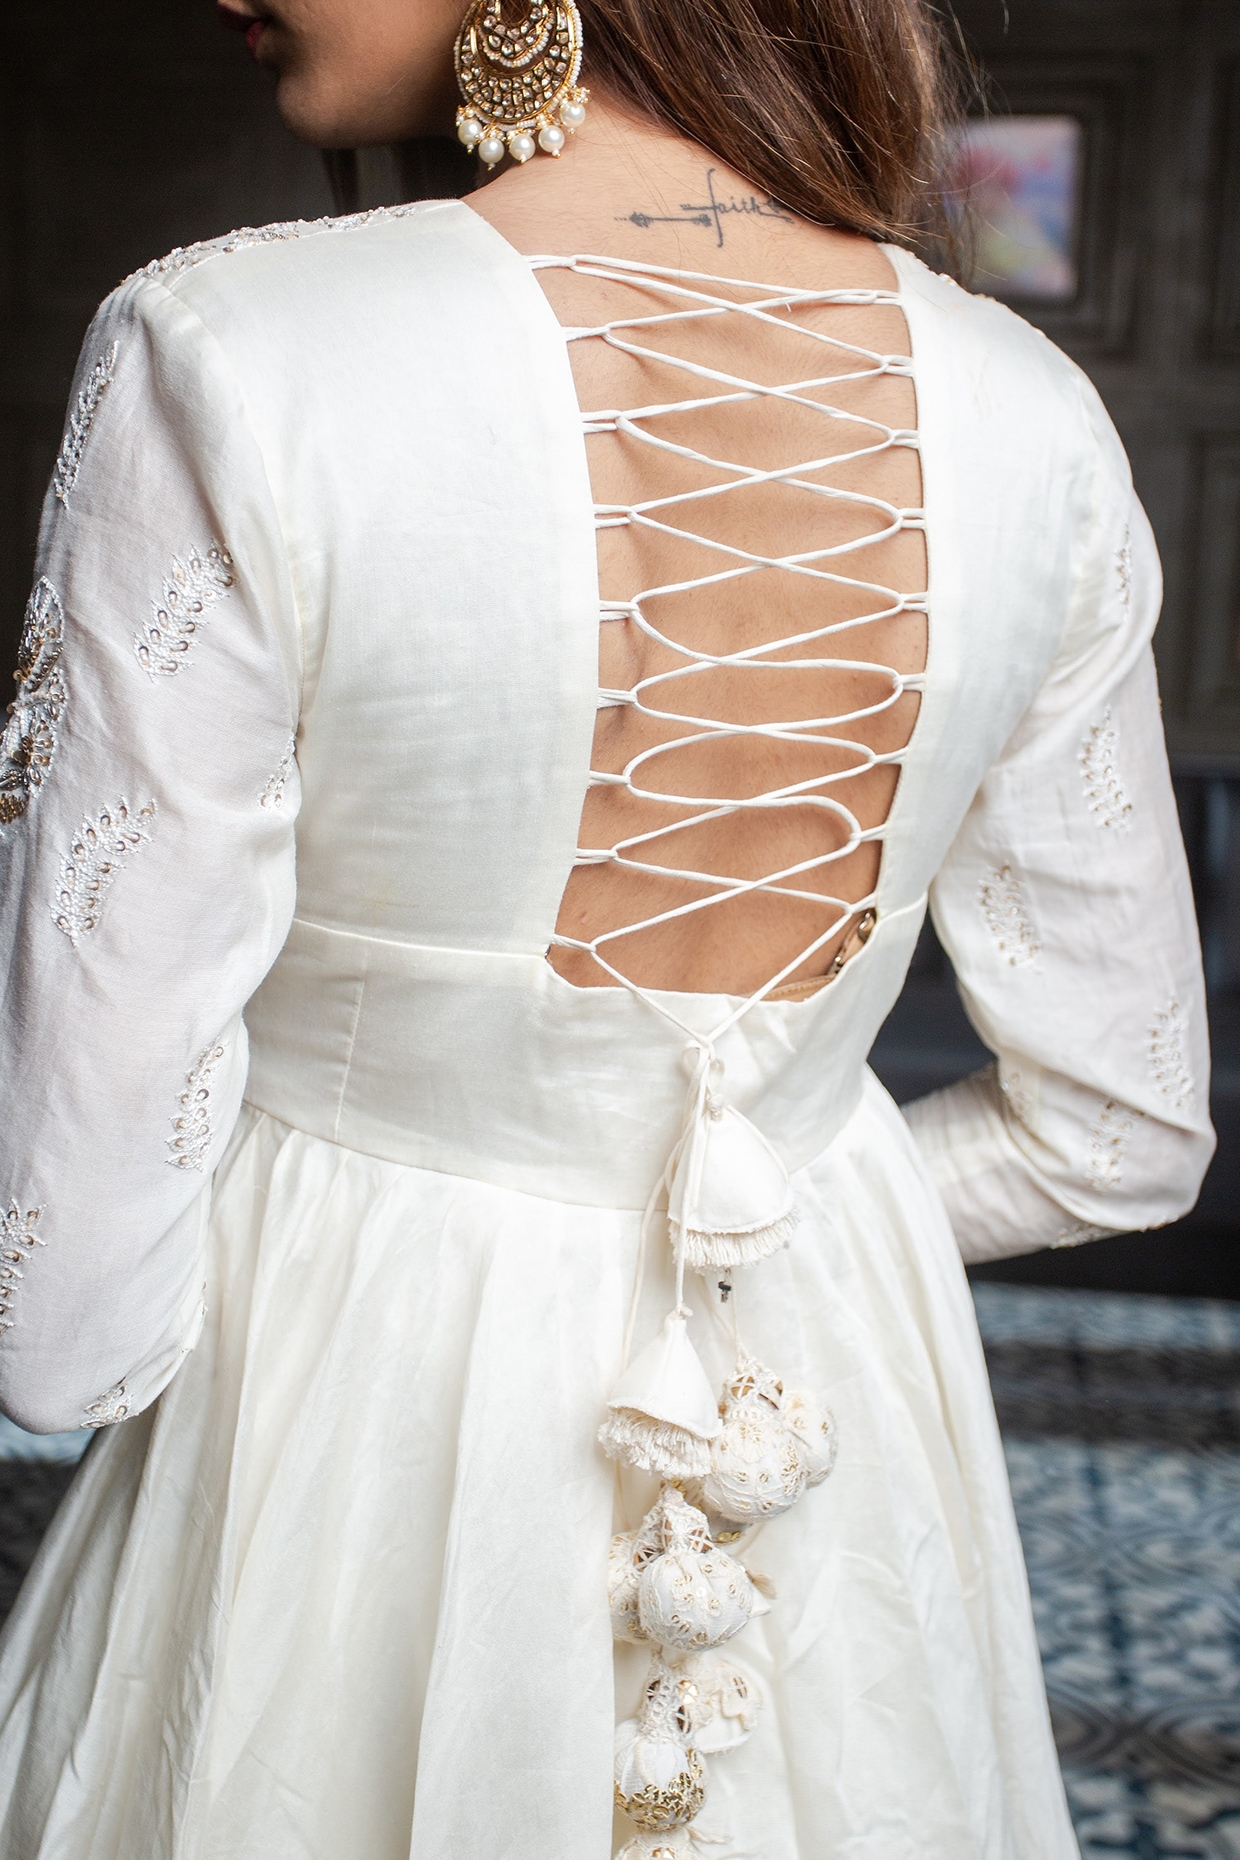 Nora Fatehi Looks Exquisite In Pristine White Anarkali Suit